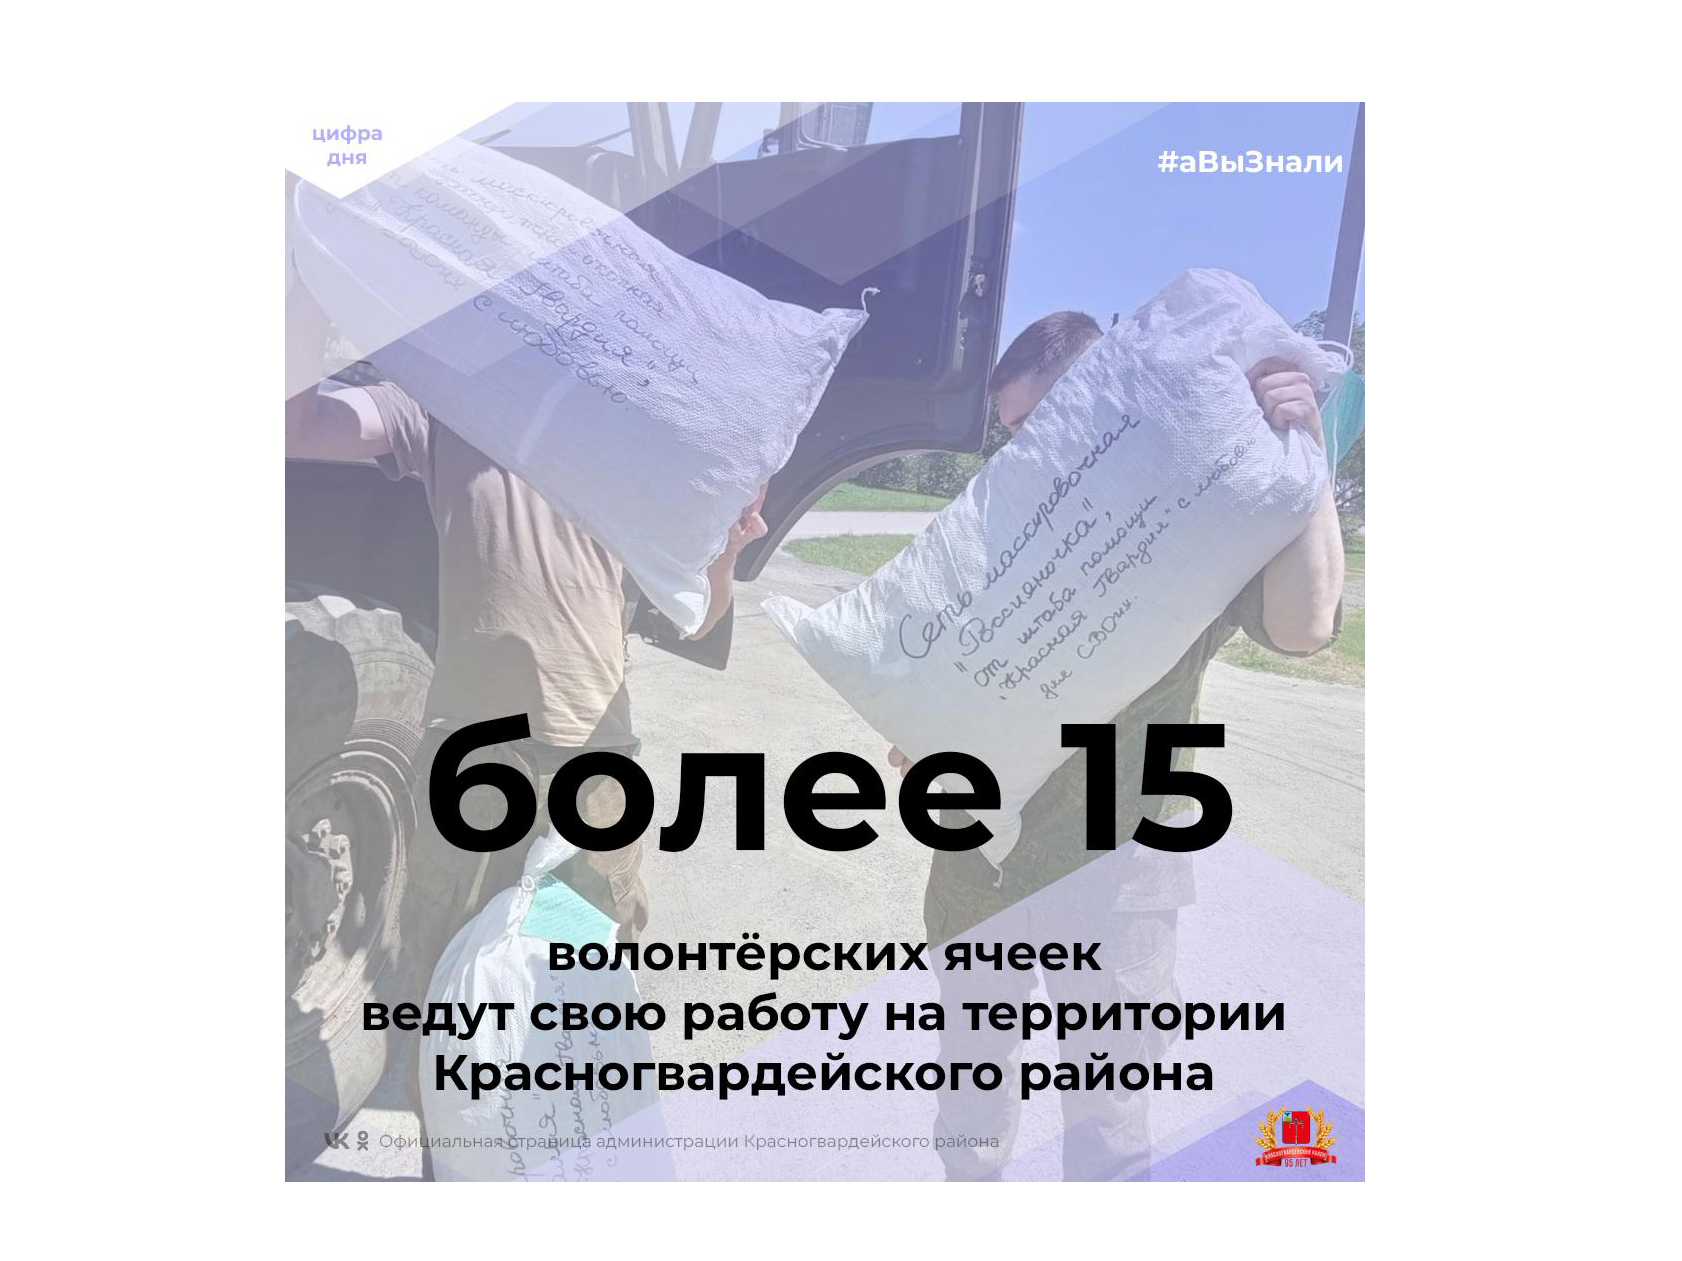 #аВыЗнали, что на территории Красногвардейского района ведут свою работу более 15 волонтёрских ячеек?.